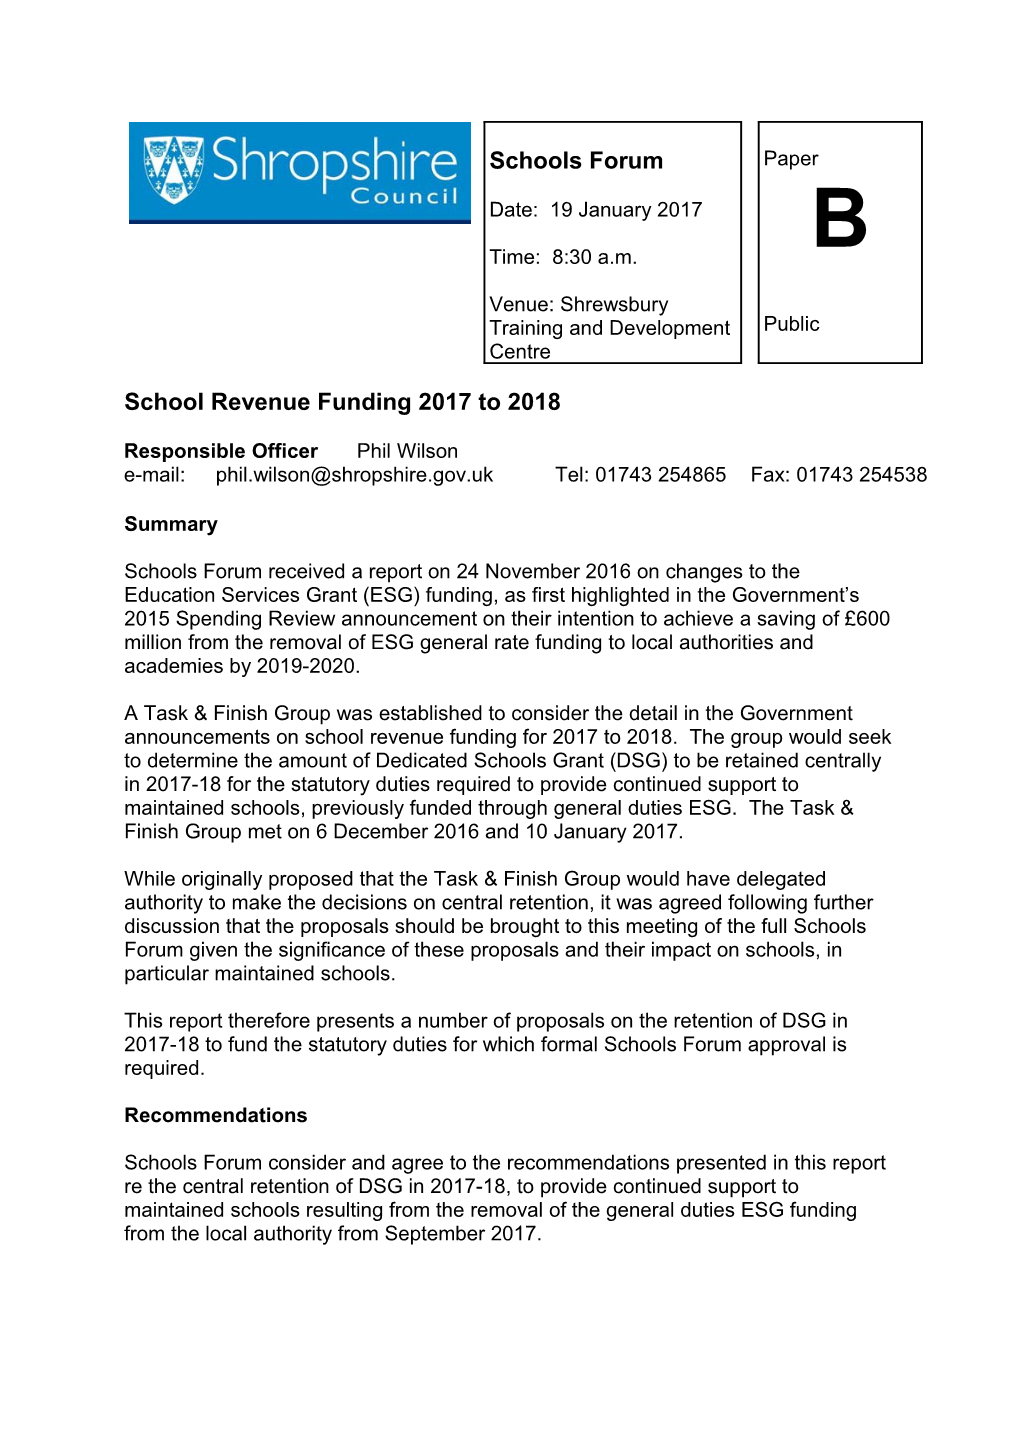 School Revenue Funding 2017 to 2018